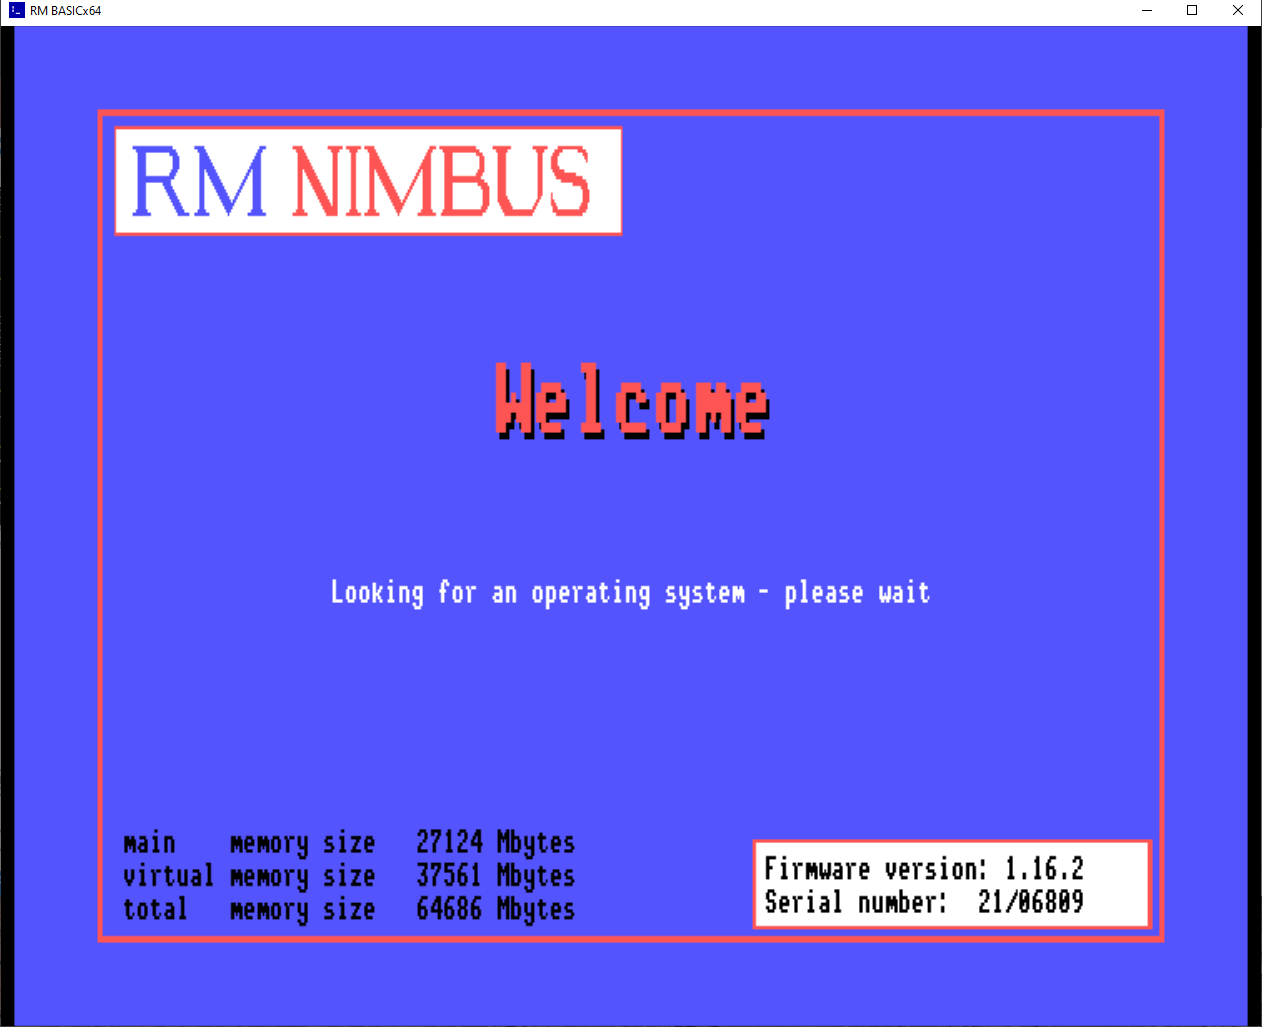 The Nimbus-esque welcome screen